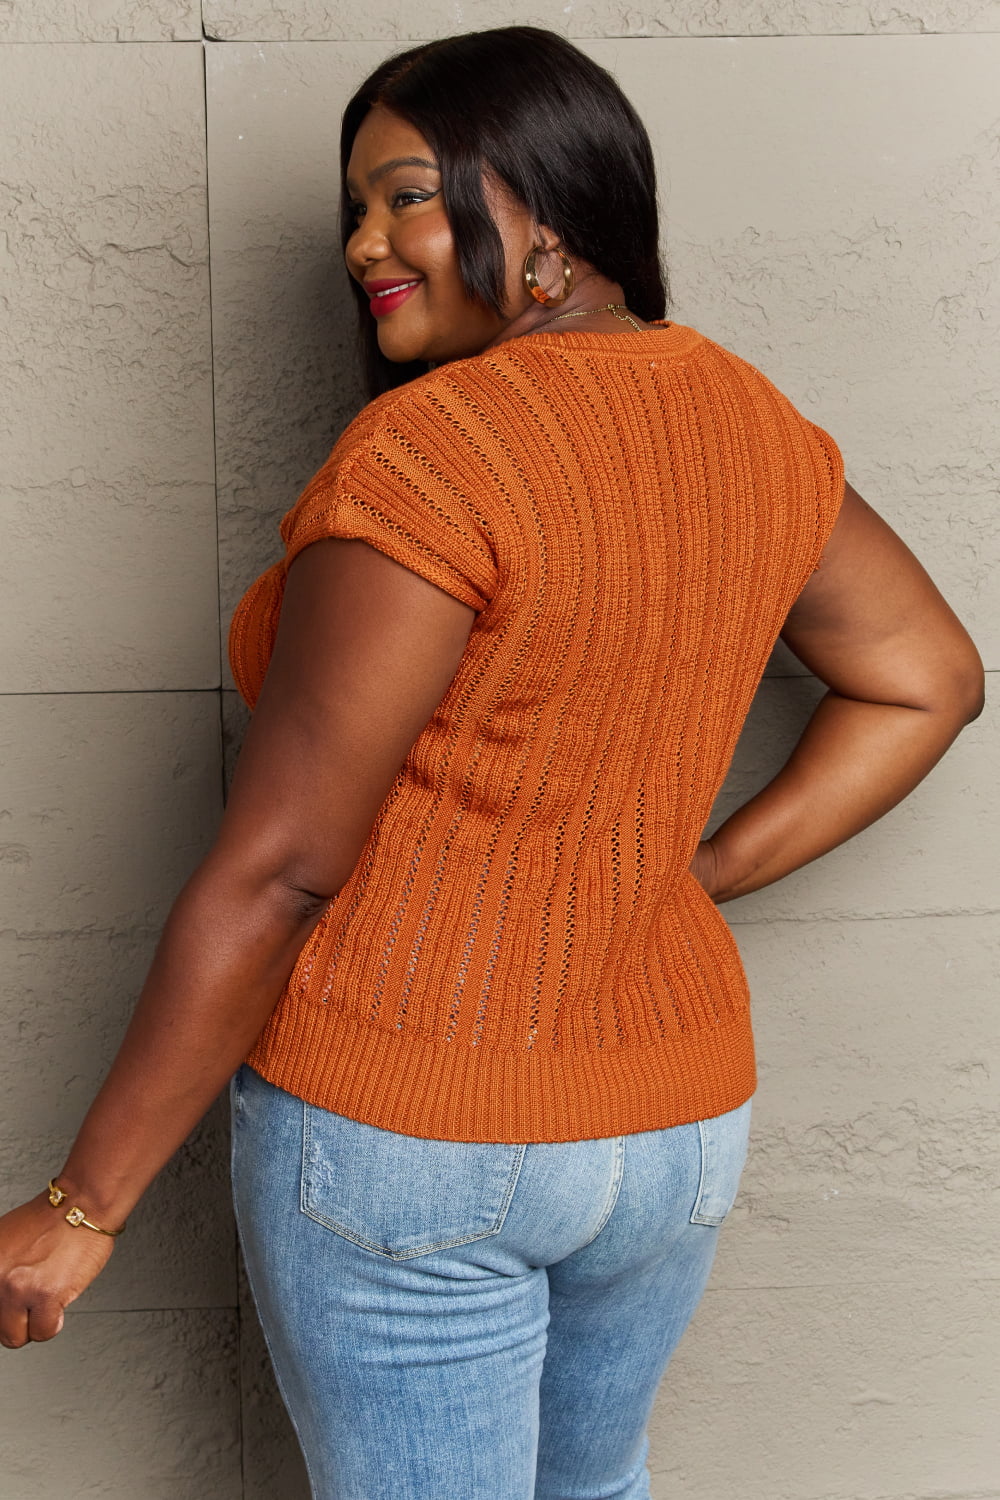 Sew In Love Full Size Preppy Casual Knit Sweater Vest - Scarlett's Riverside Boutique 